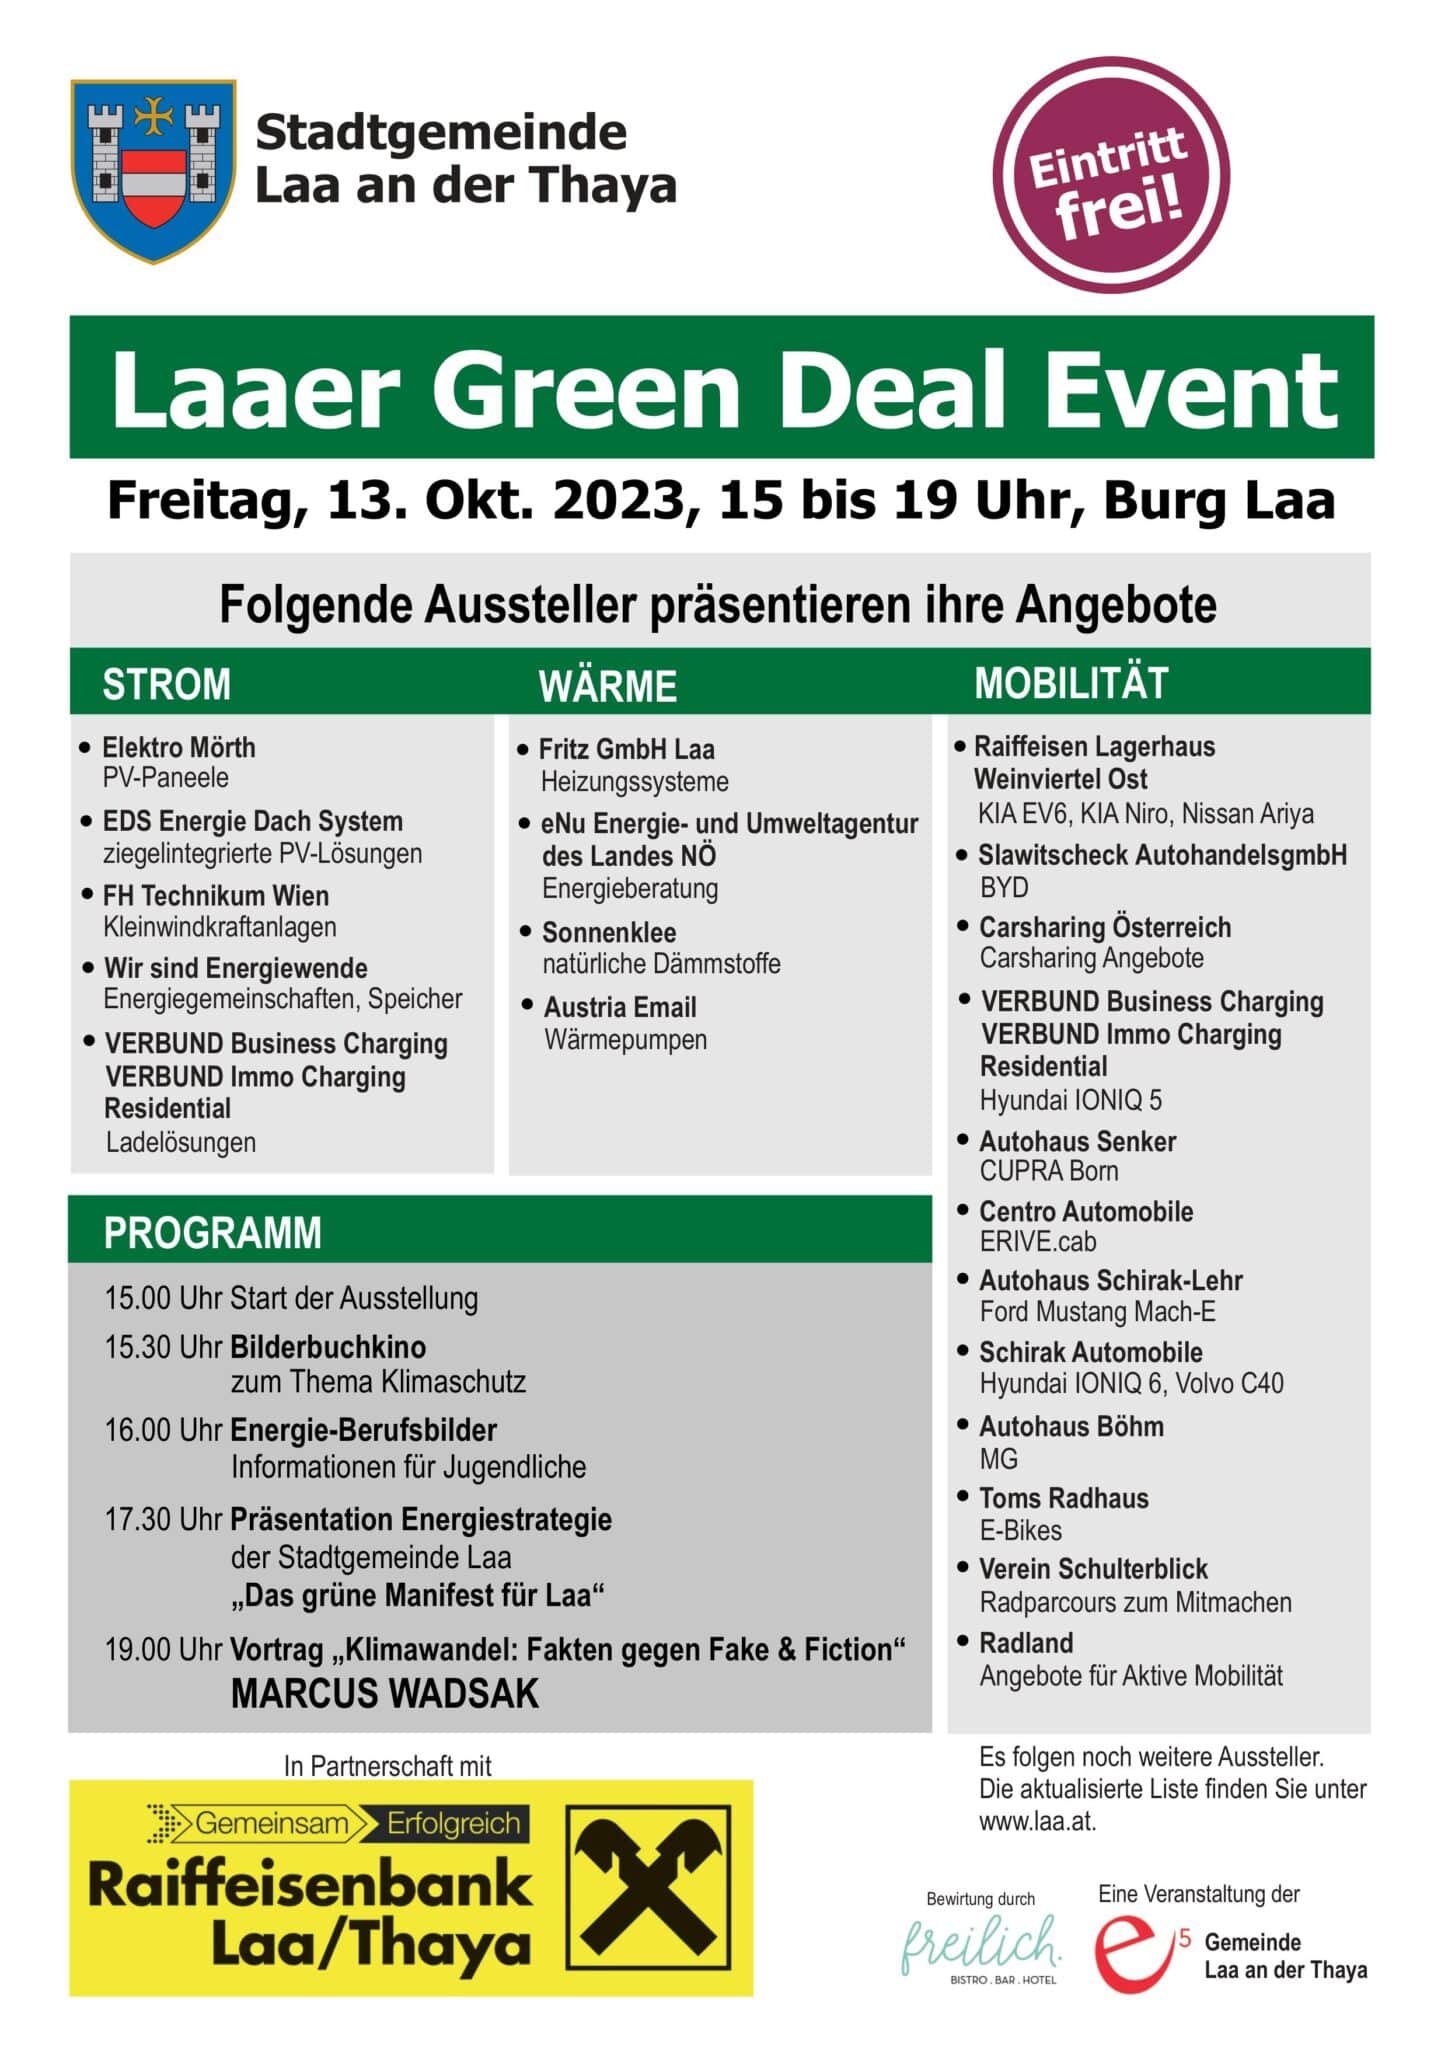 Stadtgemeinde Laa an der Thaya – Green Deal Event | A4 Info Laaer Green Deal Event PRINT FINAL 2 scaled